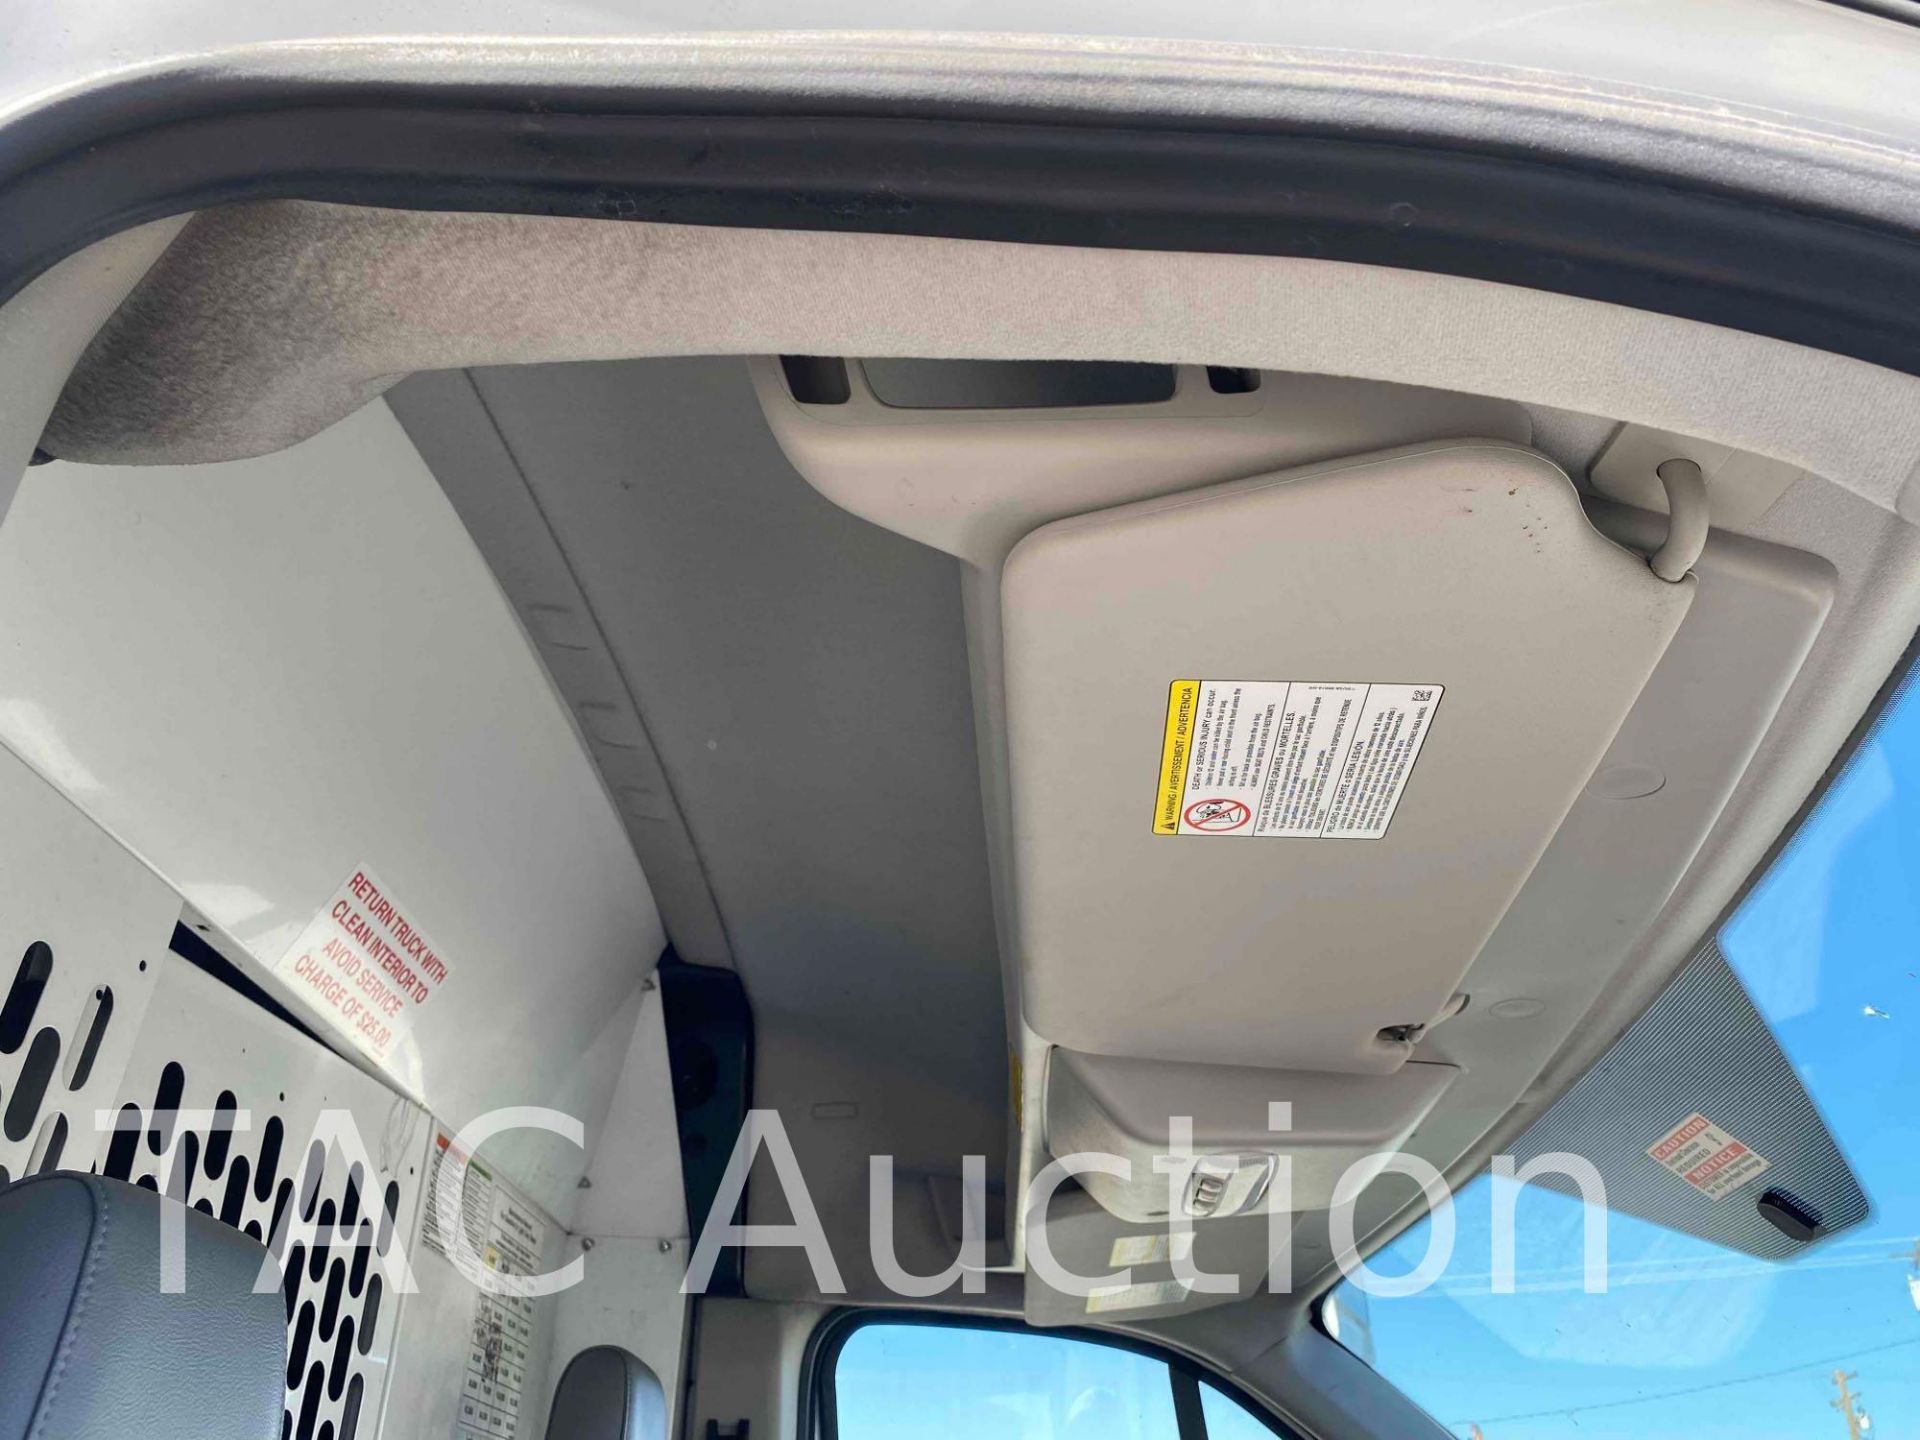 2019 Ford Transit 150 Cargo Van - Image 26 of 39